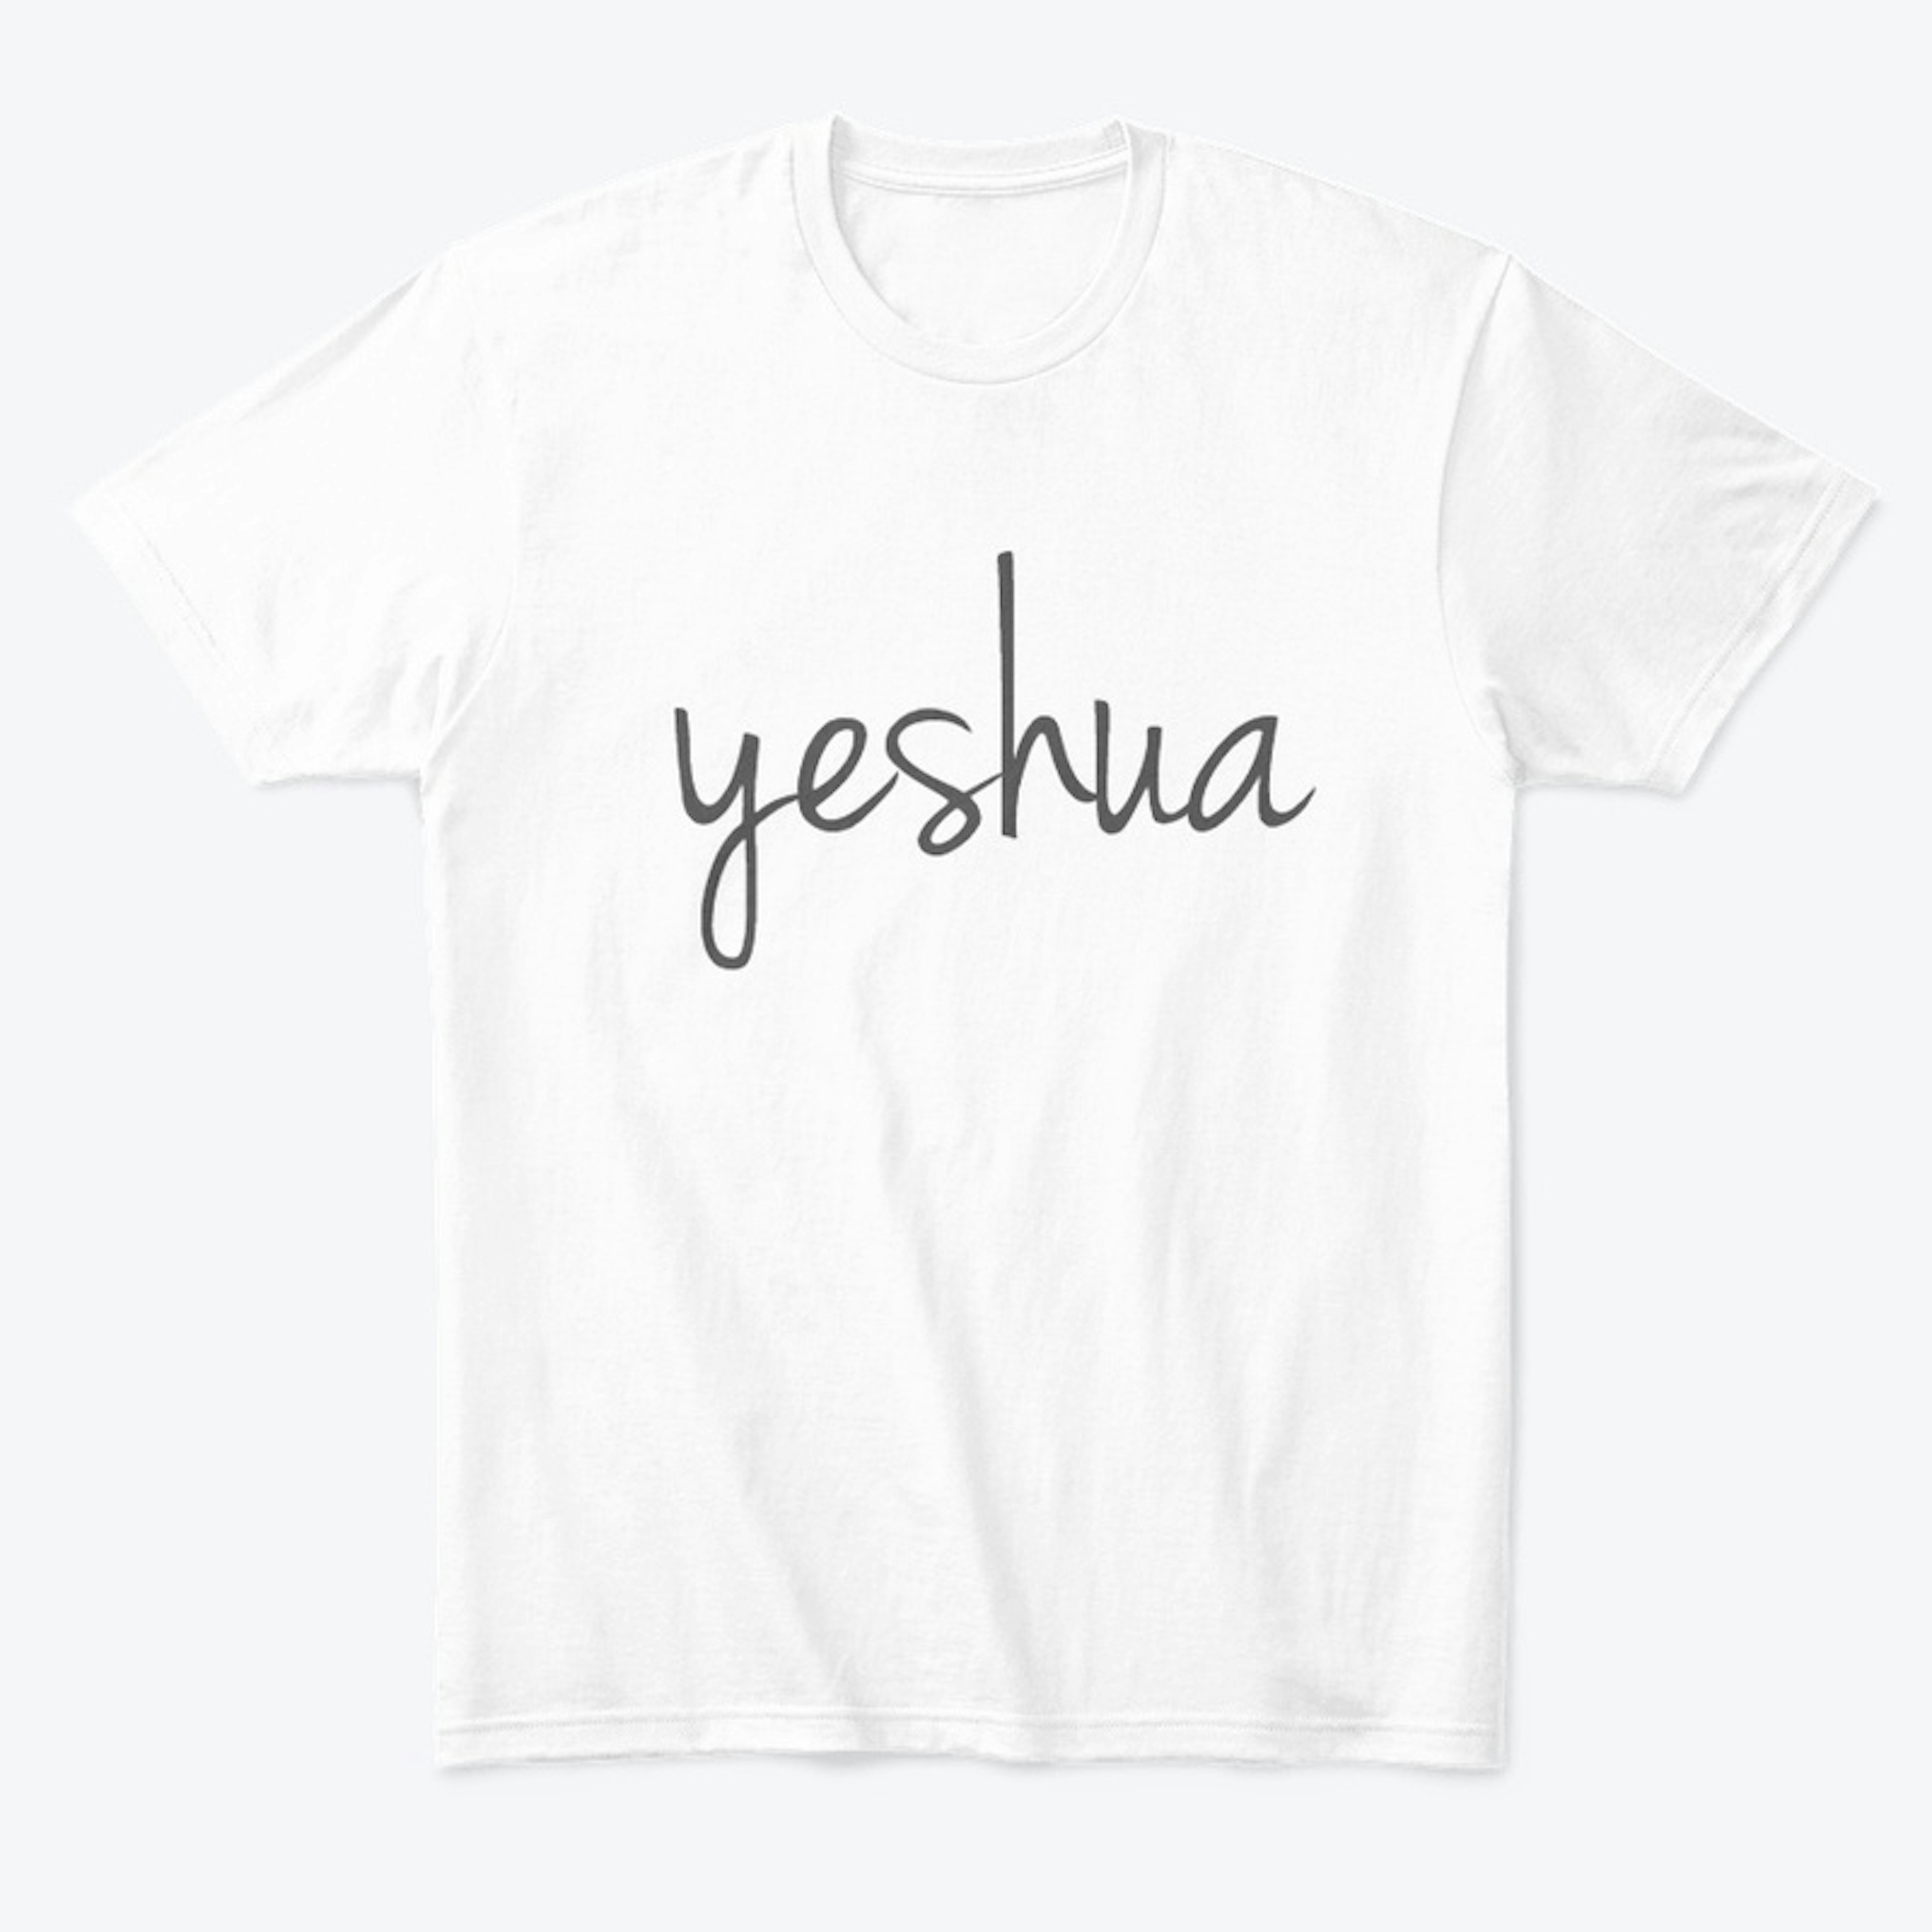 yeshua